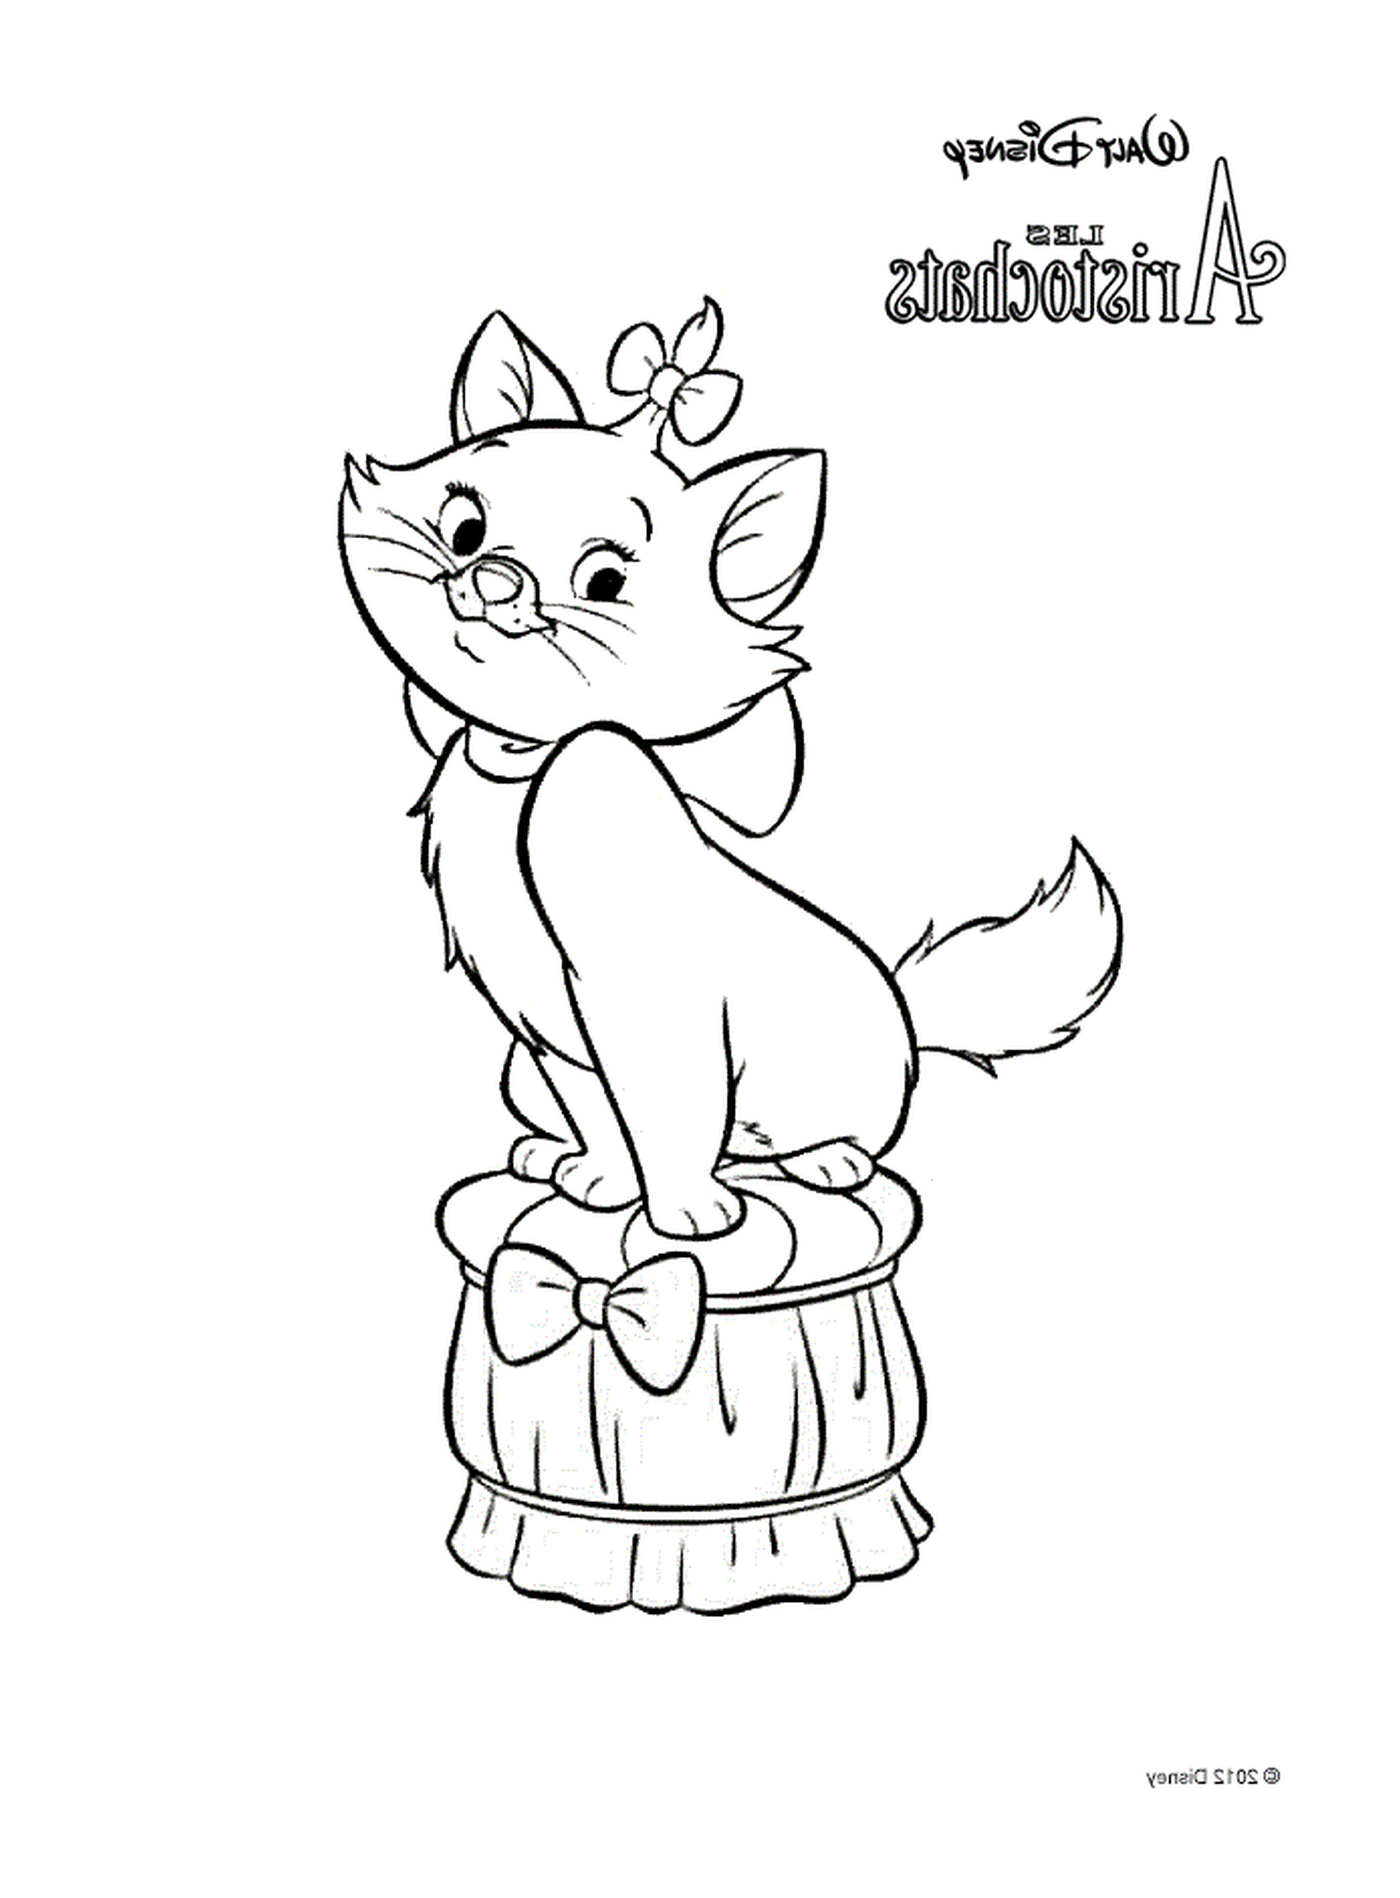  玛丽 迪士尼的亚里士多查特的猫 坐在桶子上 